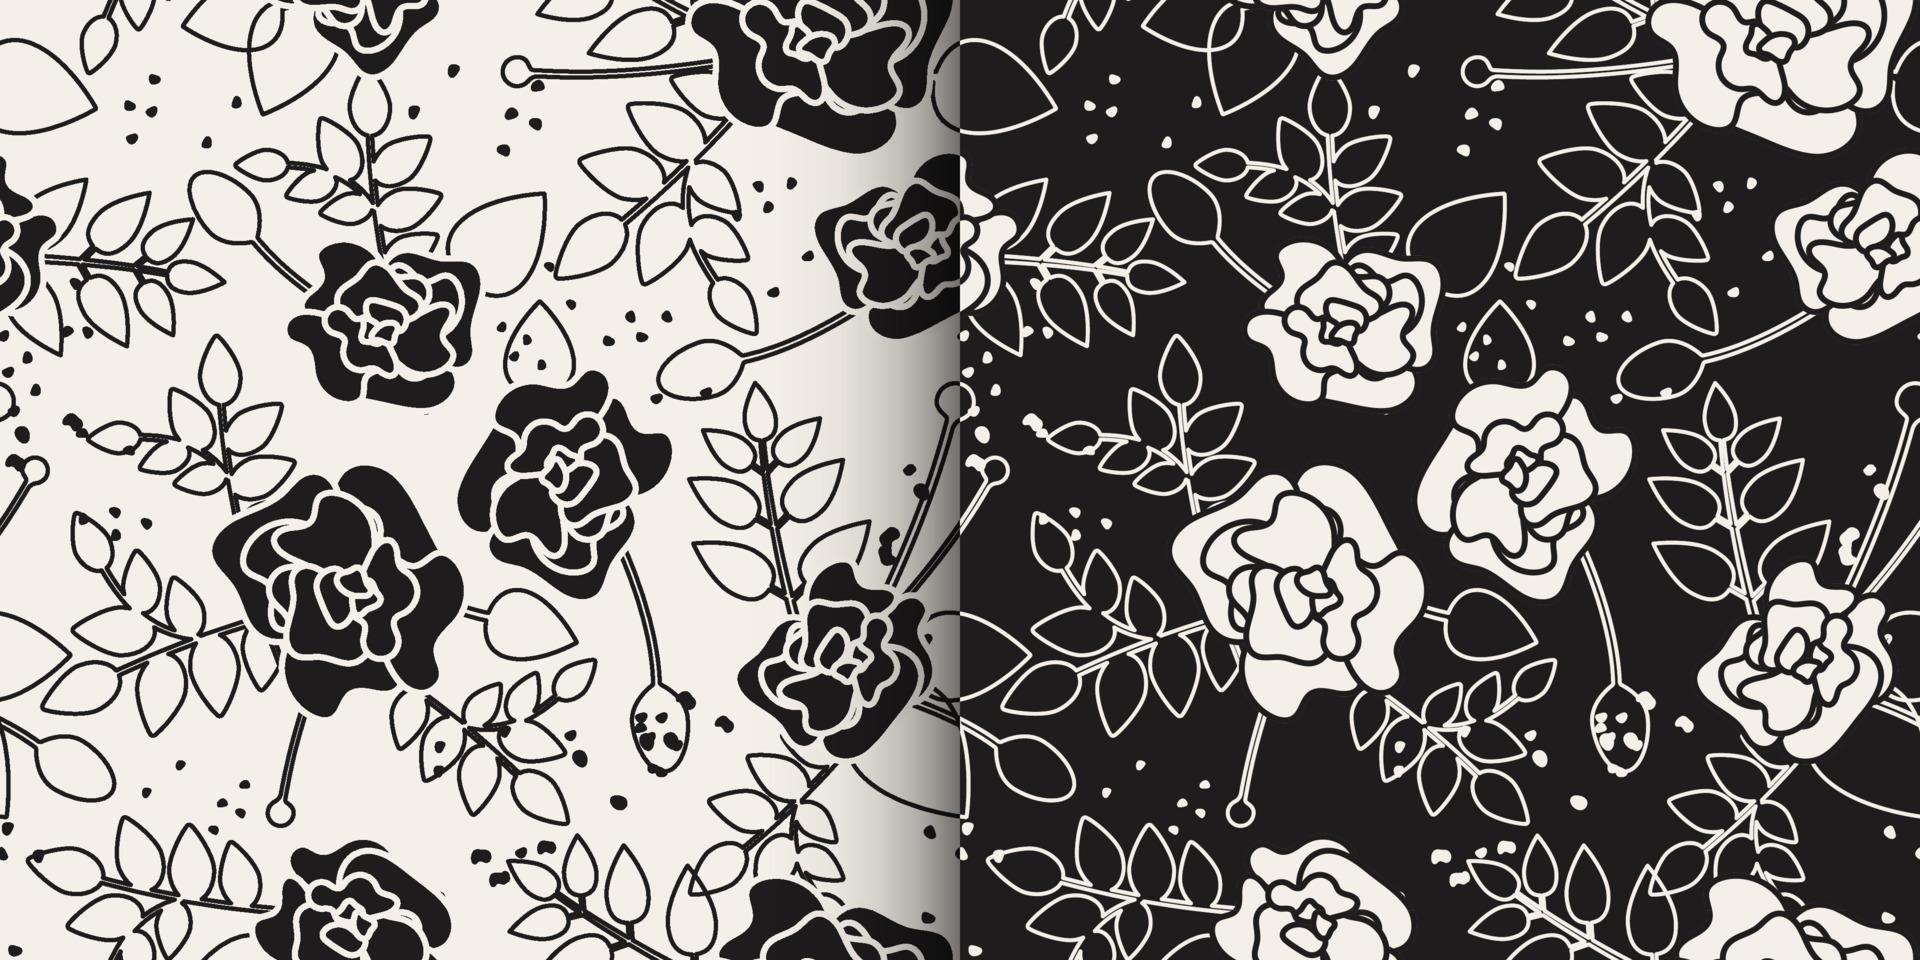 modèle sans couture de botanique floral. croquis noir et blanc de fleurs roses avec des feuilles. illustration botanique d'art de ligne élégante en noir et blanc. vecteur